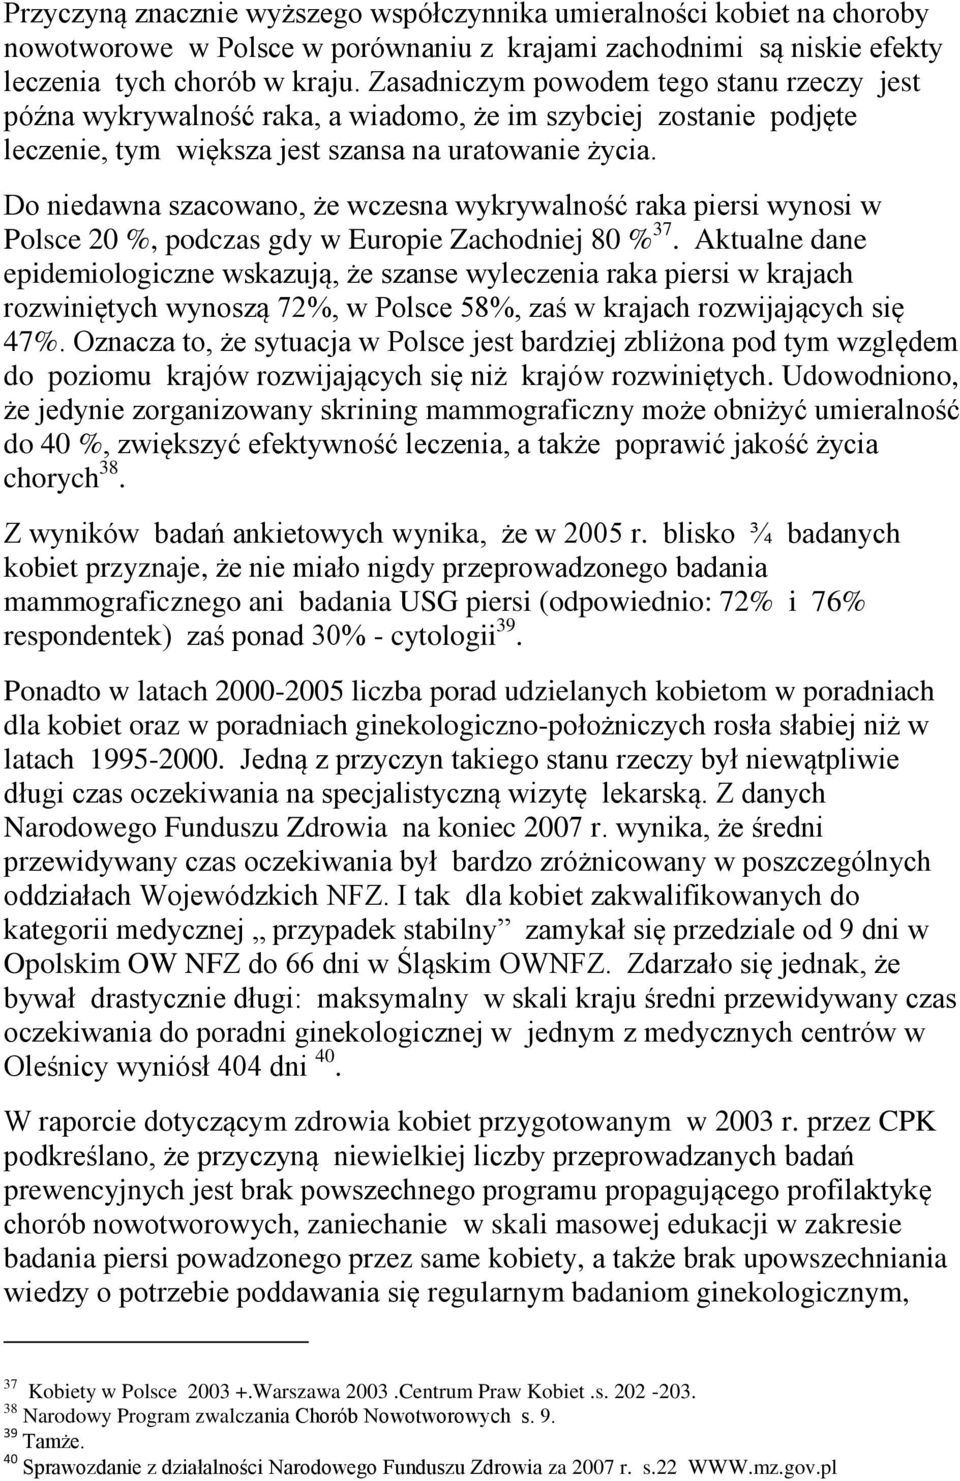 Do niedawna szacowano, że wczesna wykrywalność raka piersi wynosi w Polsce 20 %, podczas gdy w Europie Zachodniej 80 % 37.